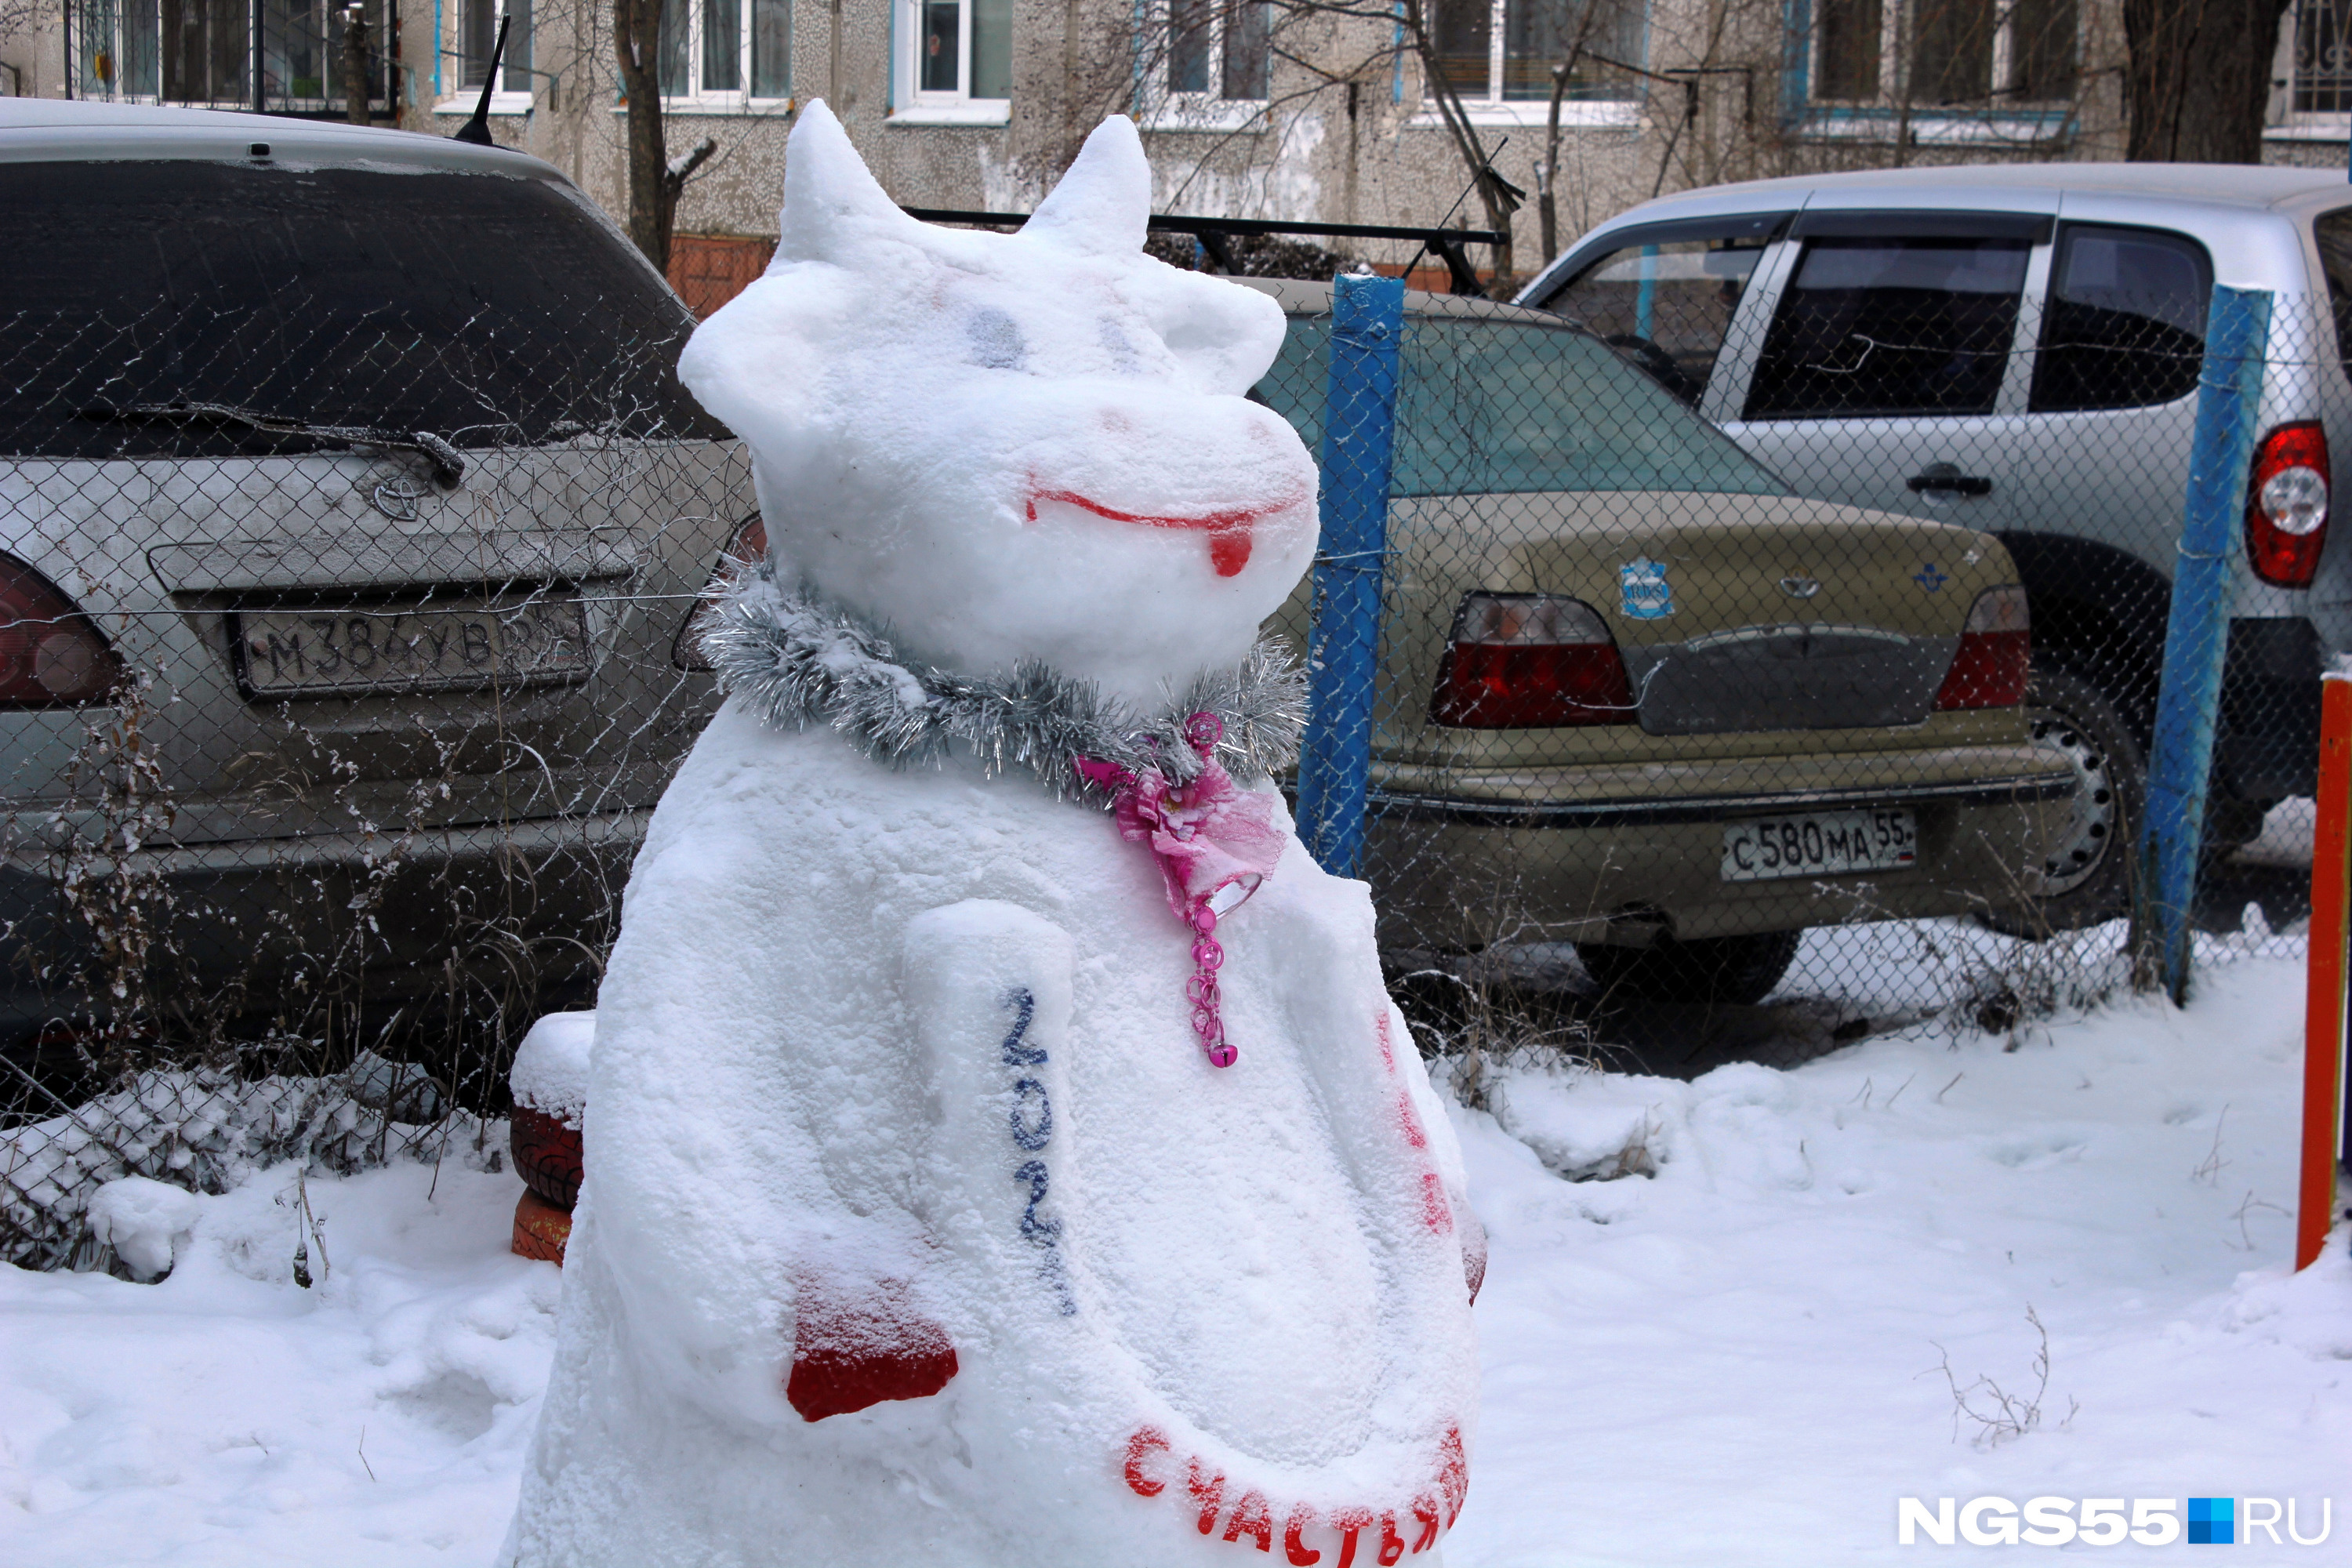 Эта милая коровка во дворе на Московке-2 желает людям счастья